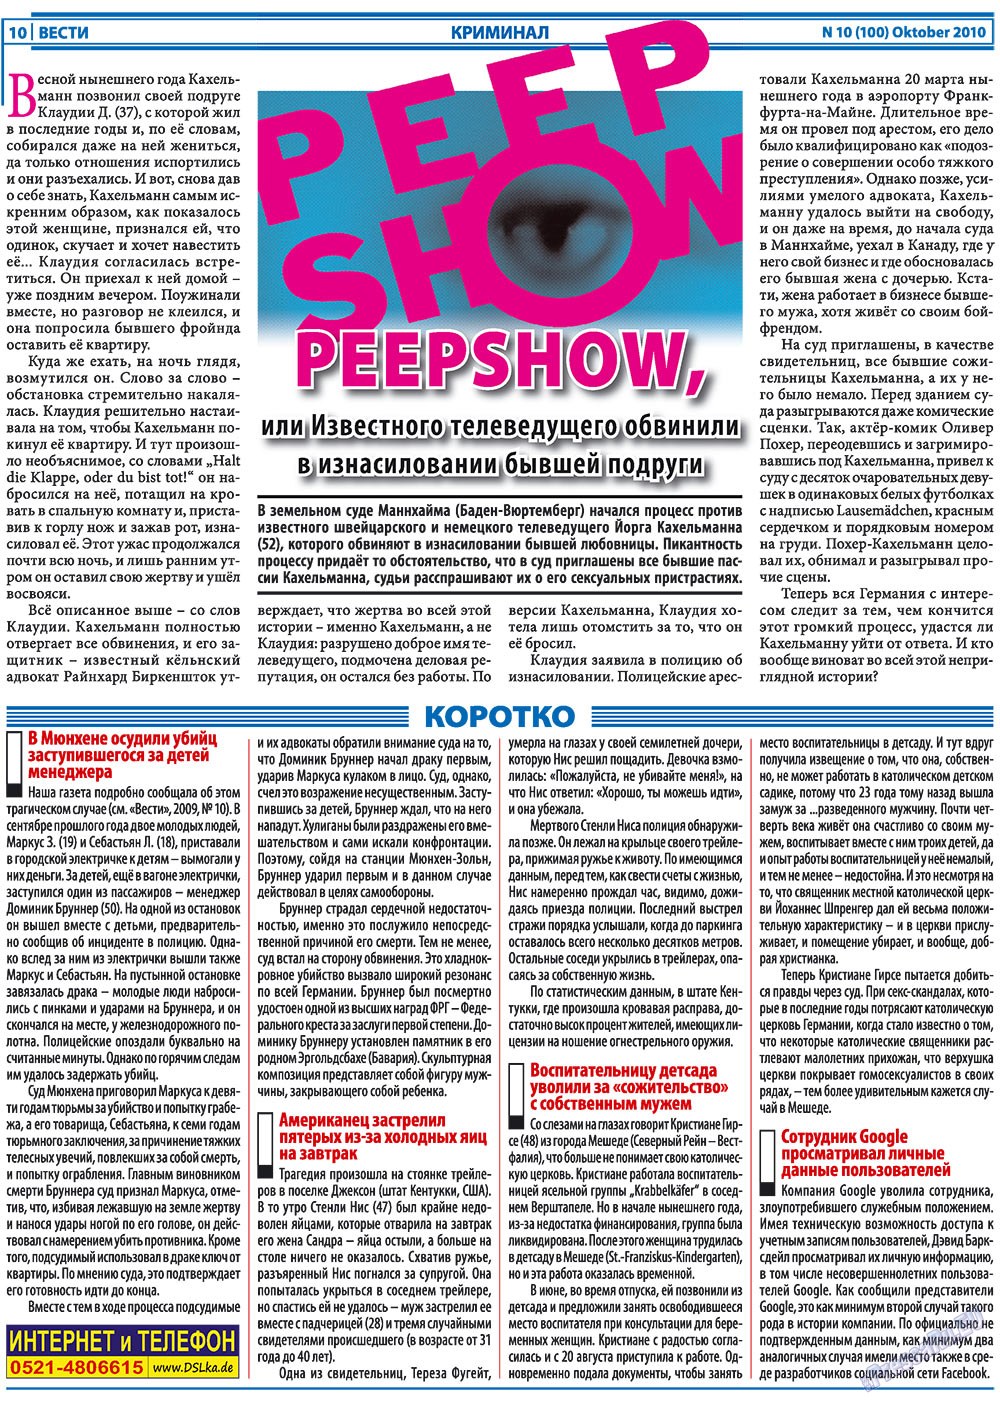 Вести, газета. 2010 №10 стр.10